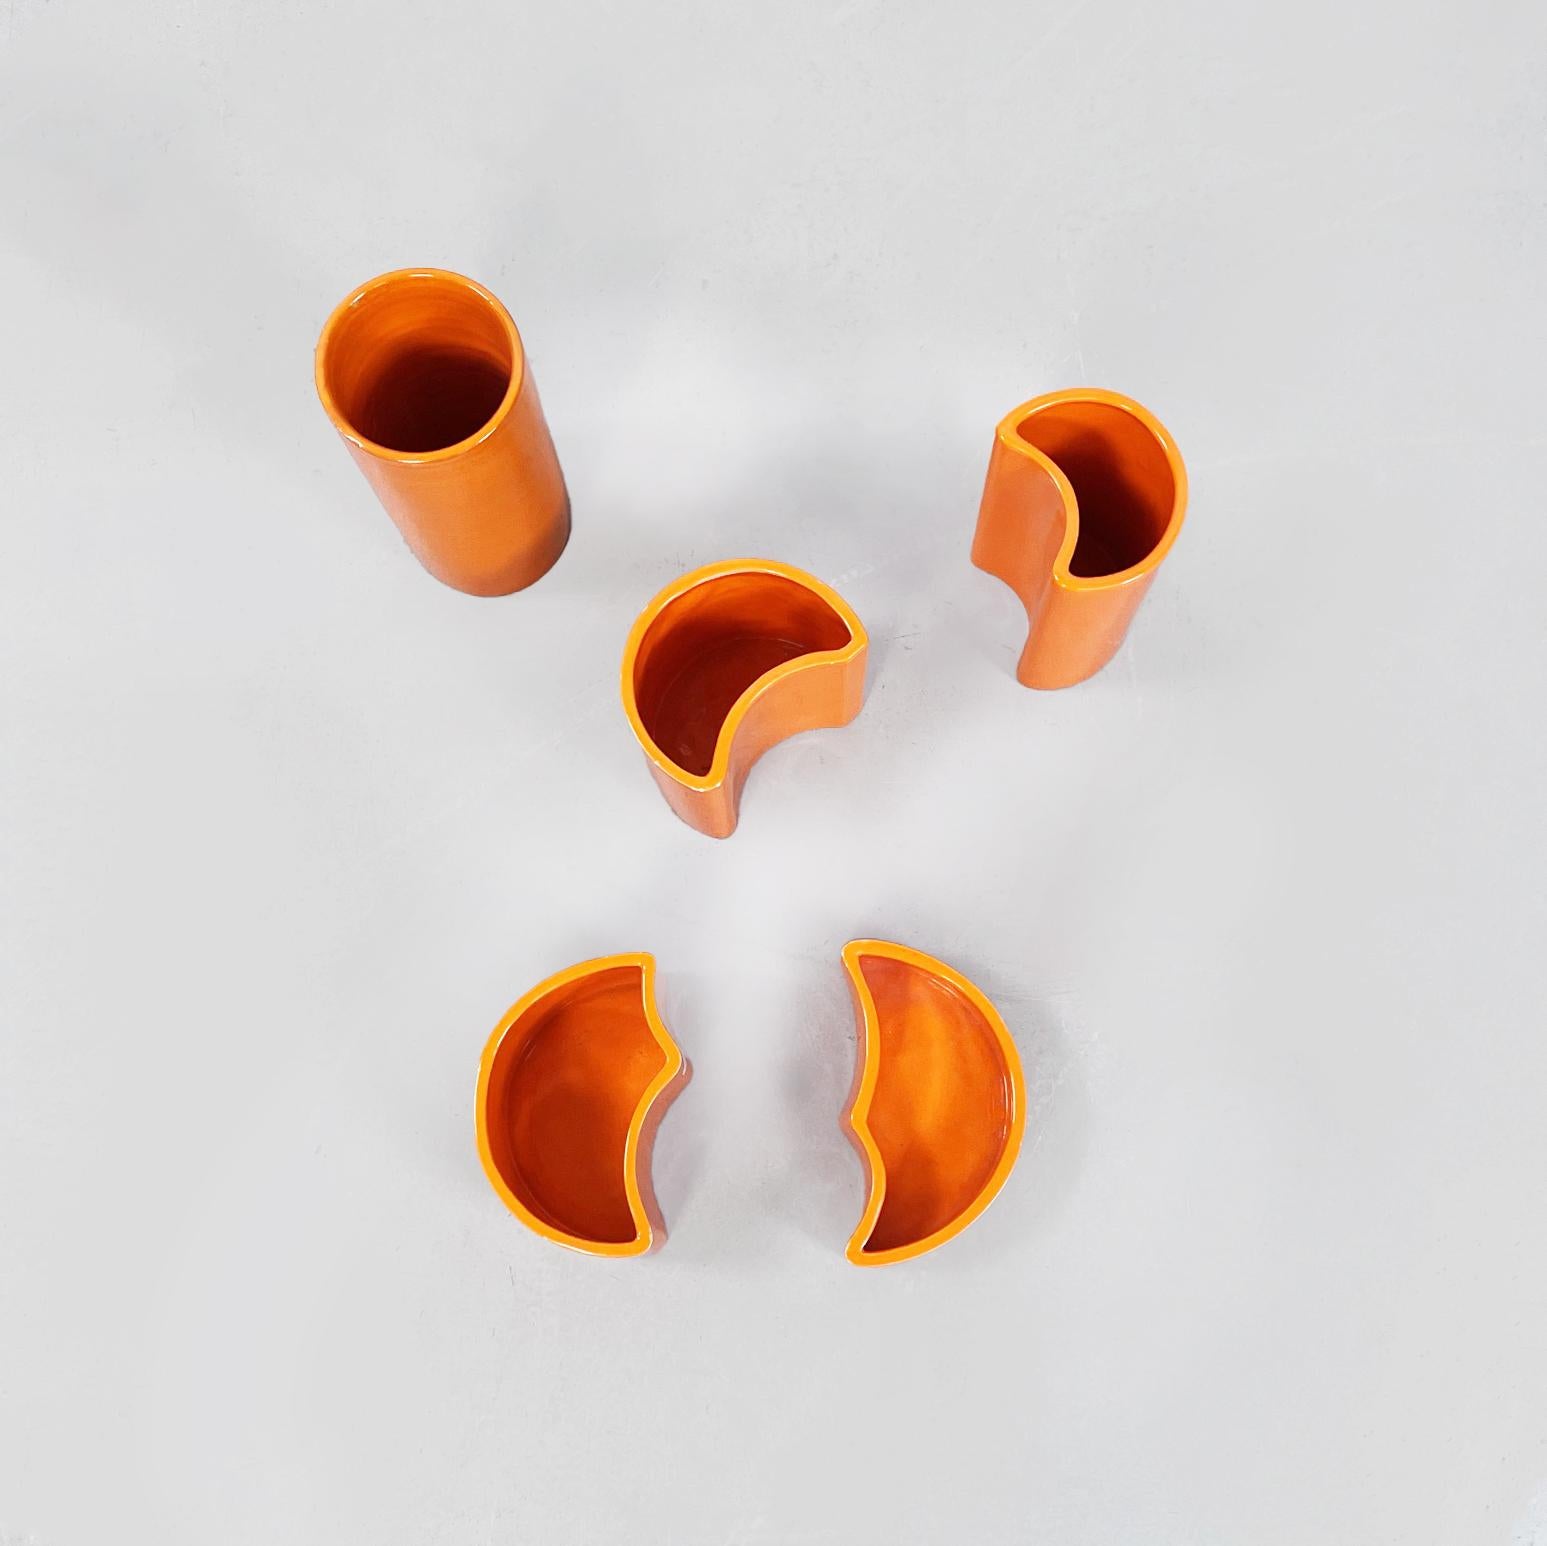 Italienische zylindrische, halbmondförmige und unregelmäßige Keramikvasen aus der Mitte des Jahrhunderts, 1970er Jahre
Satz von fünf orangefarbenen Keramikvasen. Der höchste ist zylindrisch, danach folgen zwei halbmondförmige, während die beiden